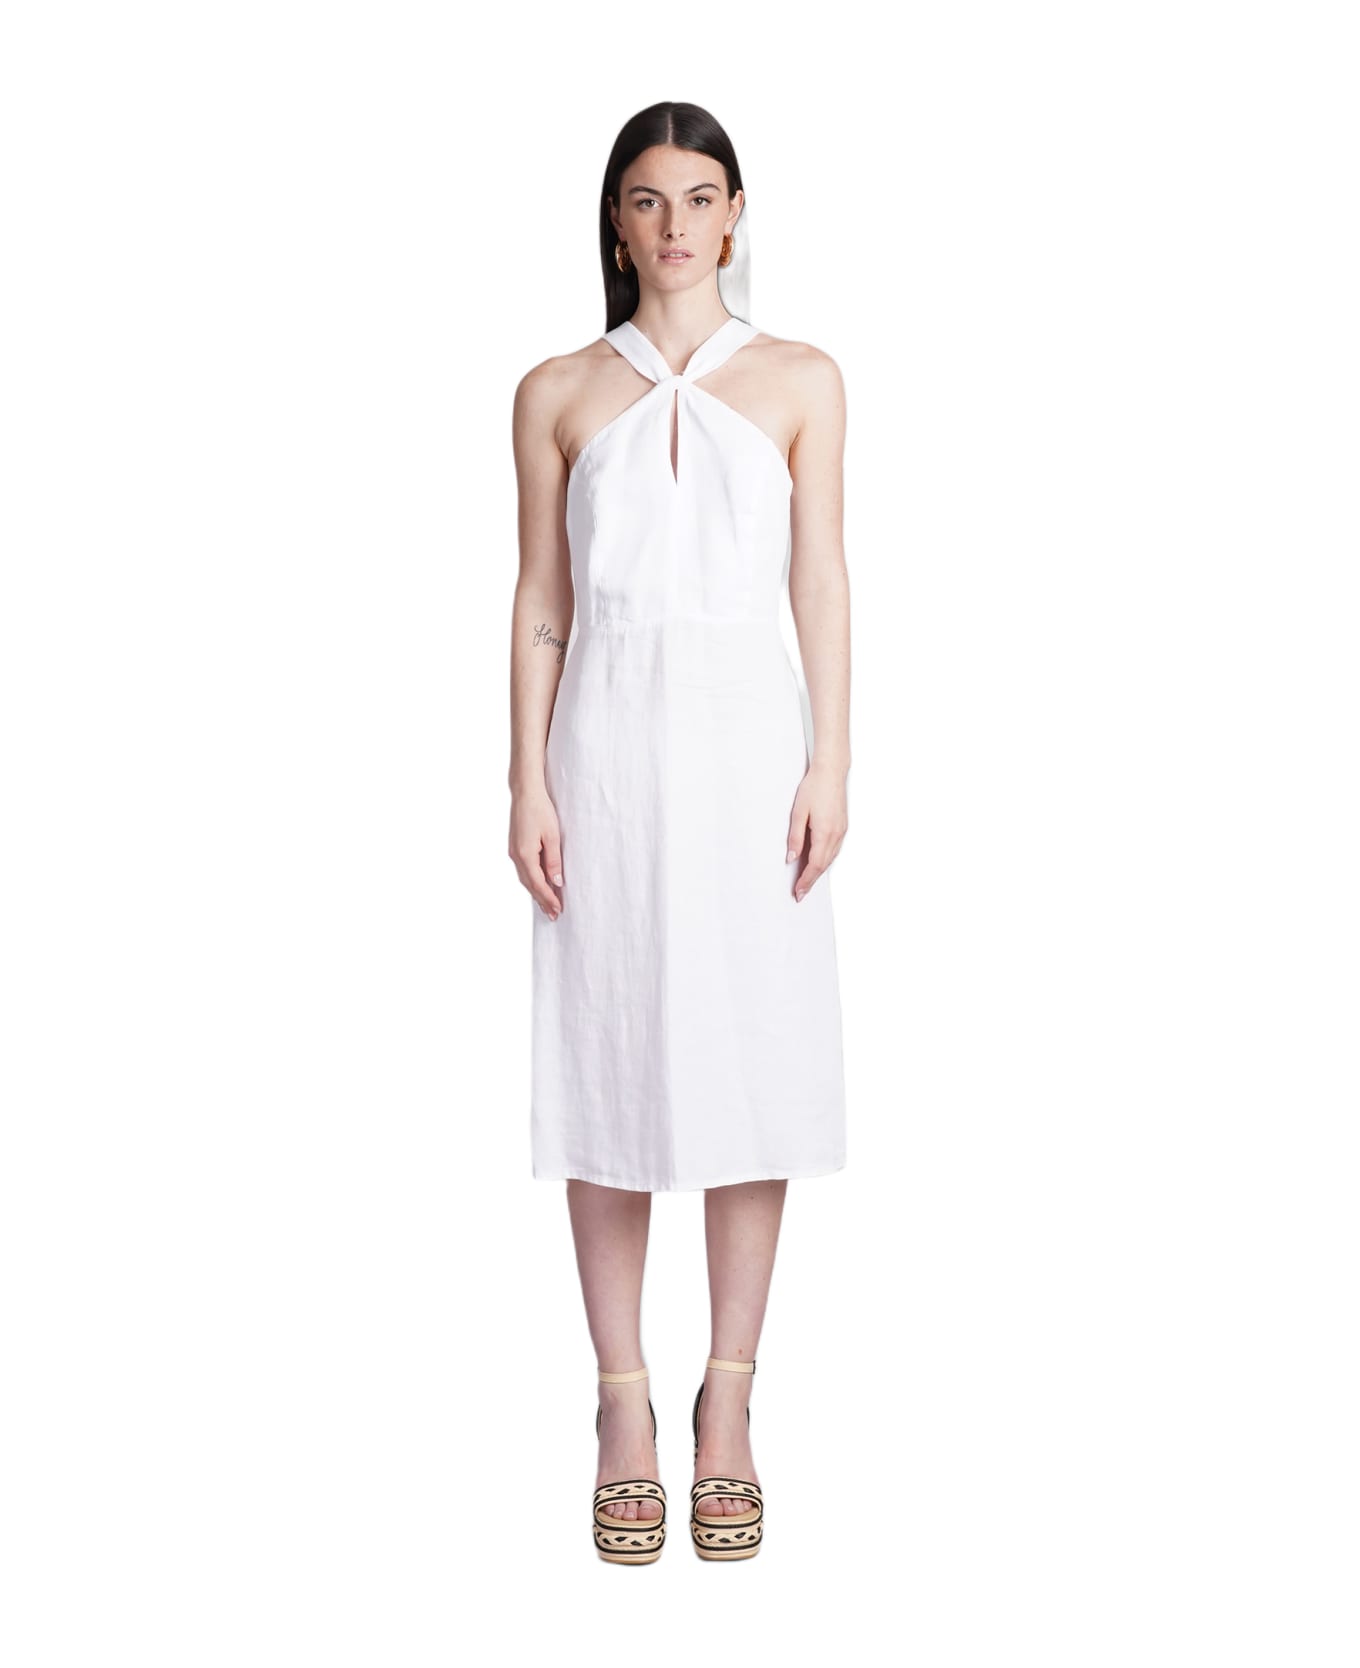 120% Lino Dress In White Linen - white